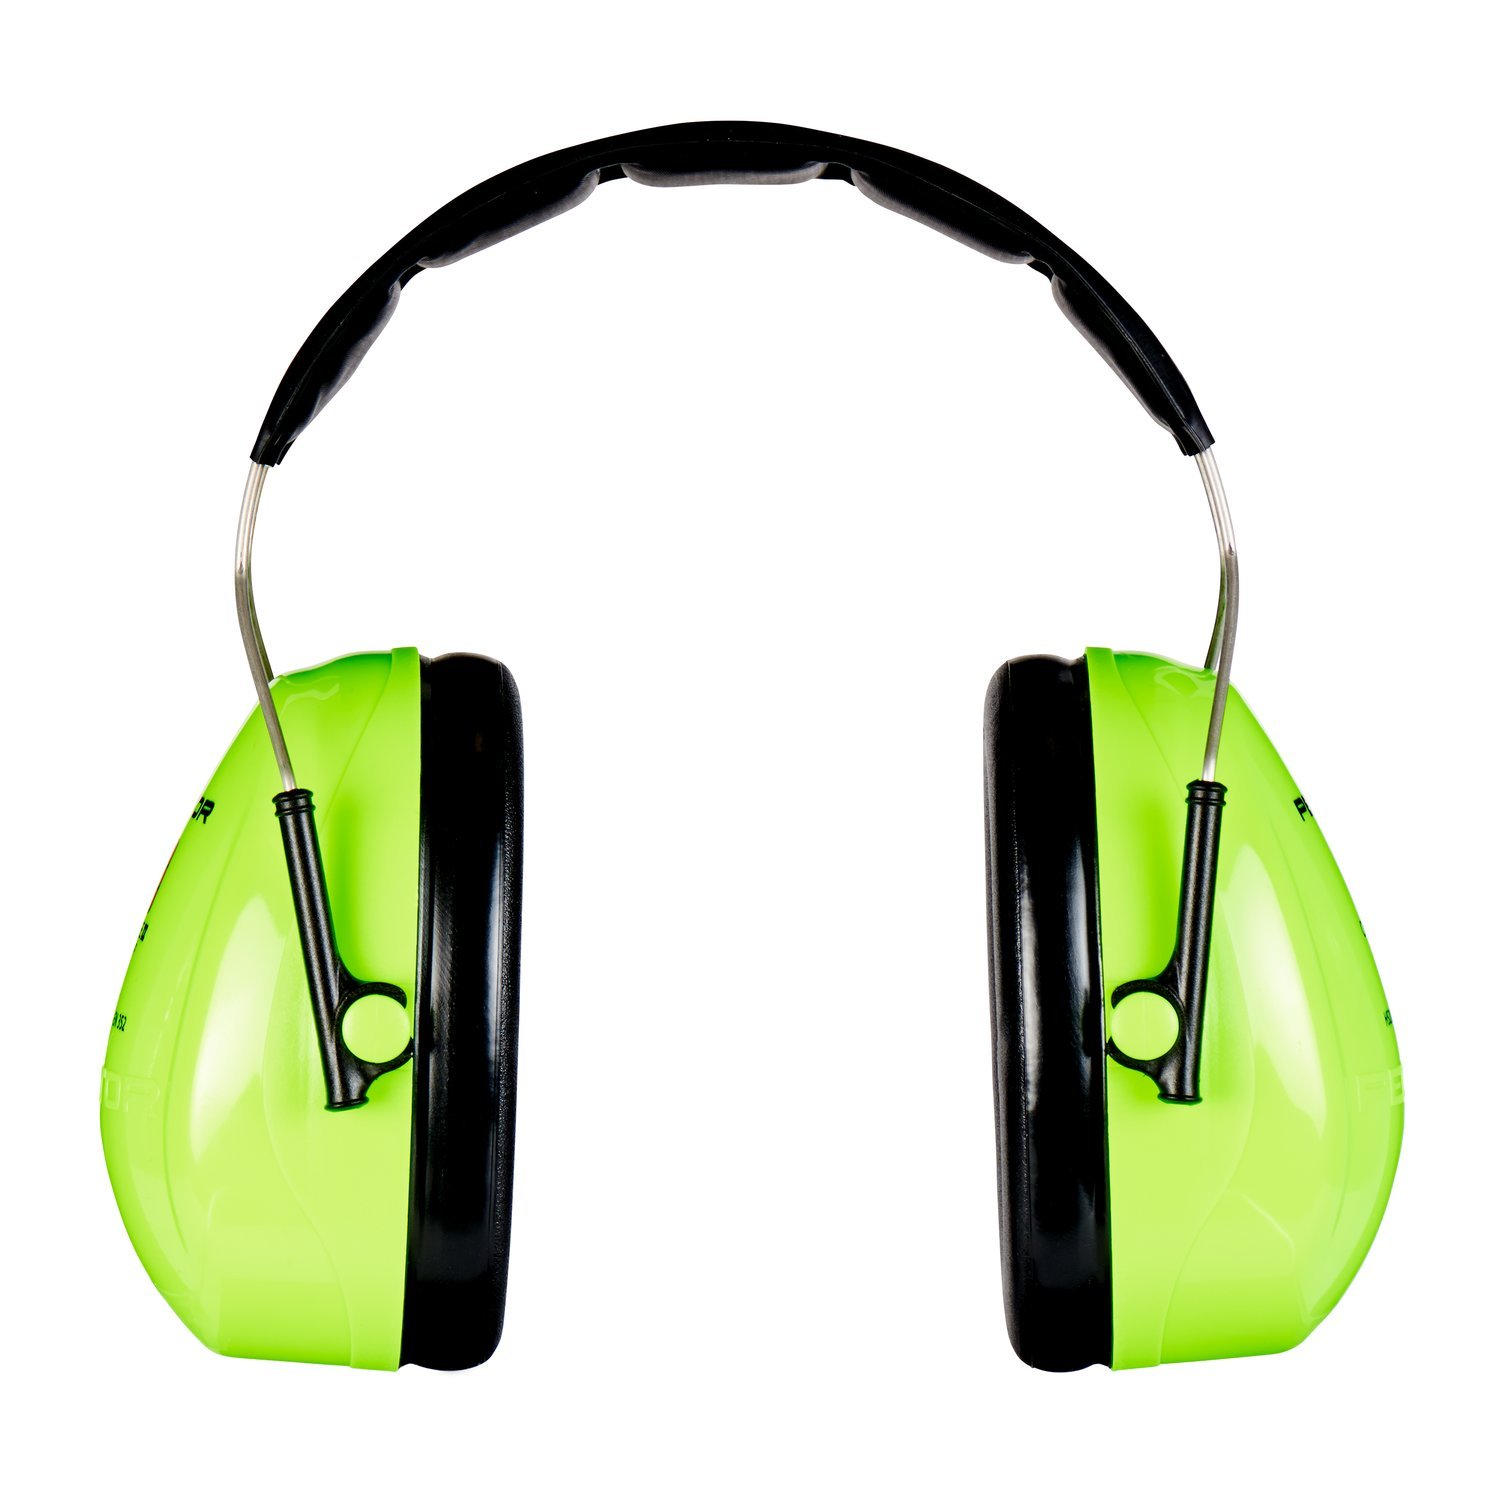 3M Peltor Optime II Kapselgehörschutz, Kopfbügel, Hi-Viz, SNR 31 dB, hohe Sichtbarkeit, 1 Stück, grün